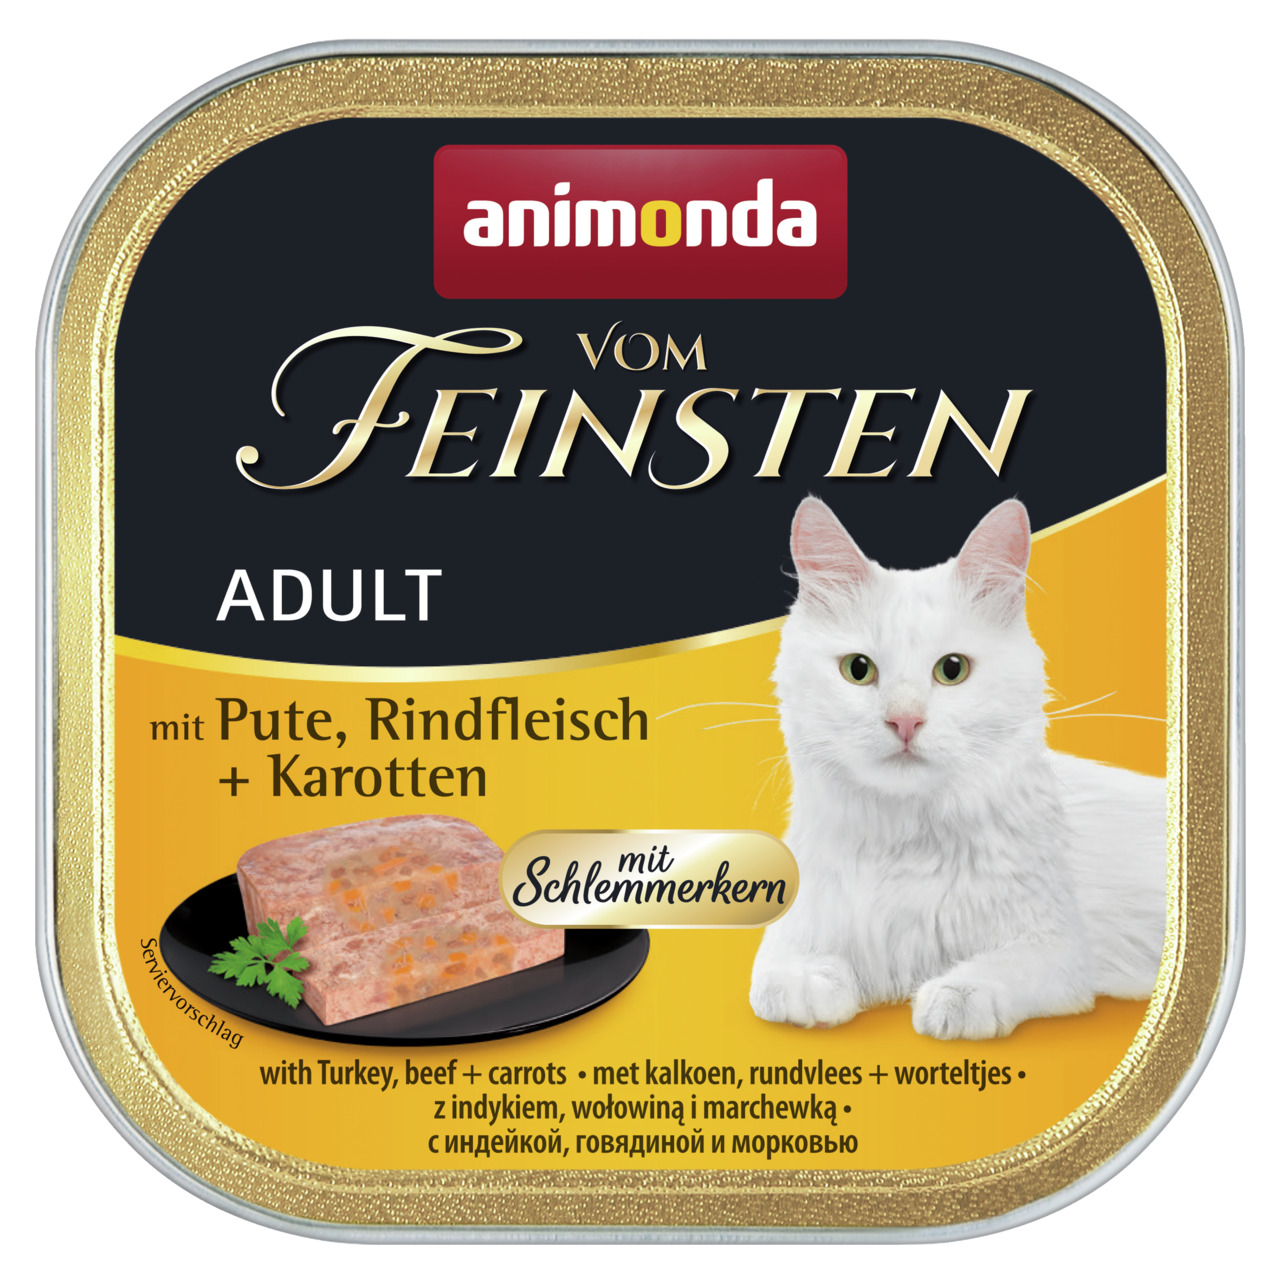 Animonda vom Feinsten Adult mit Pute, Rindfleisch + Karotten mit Schlemmerkern Katzen Nassfutter 100 g